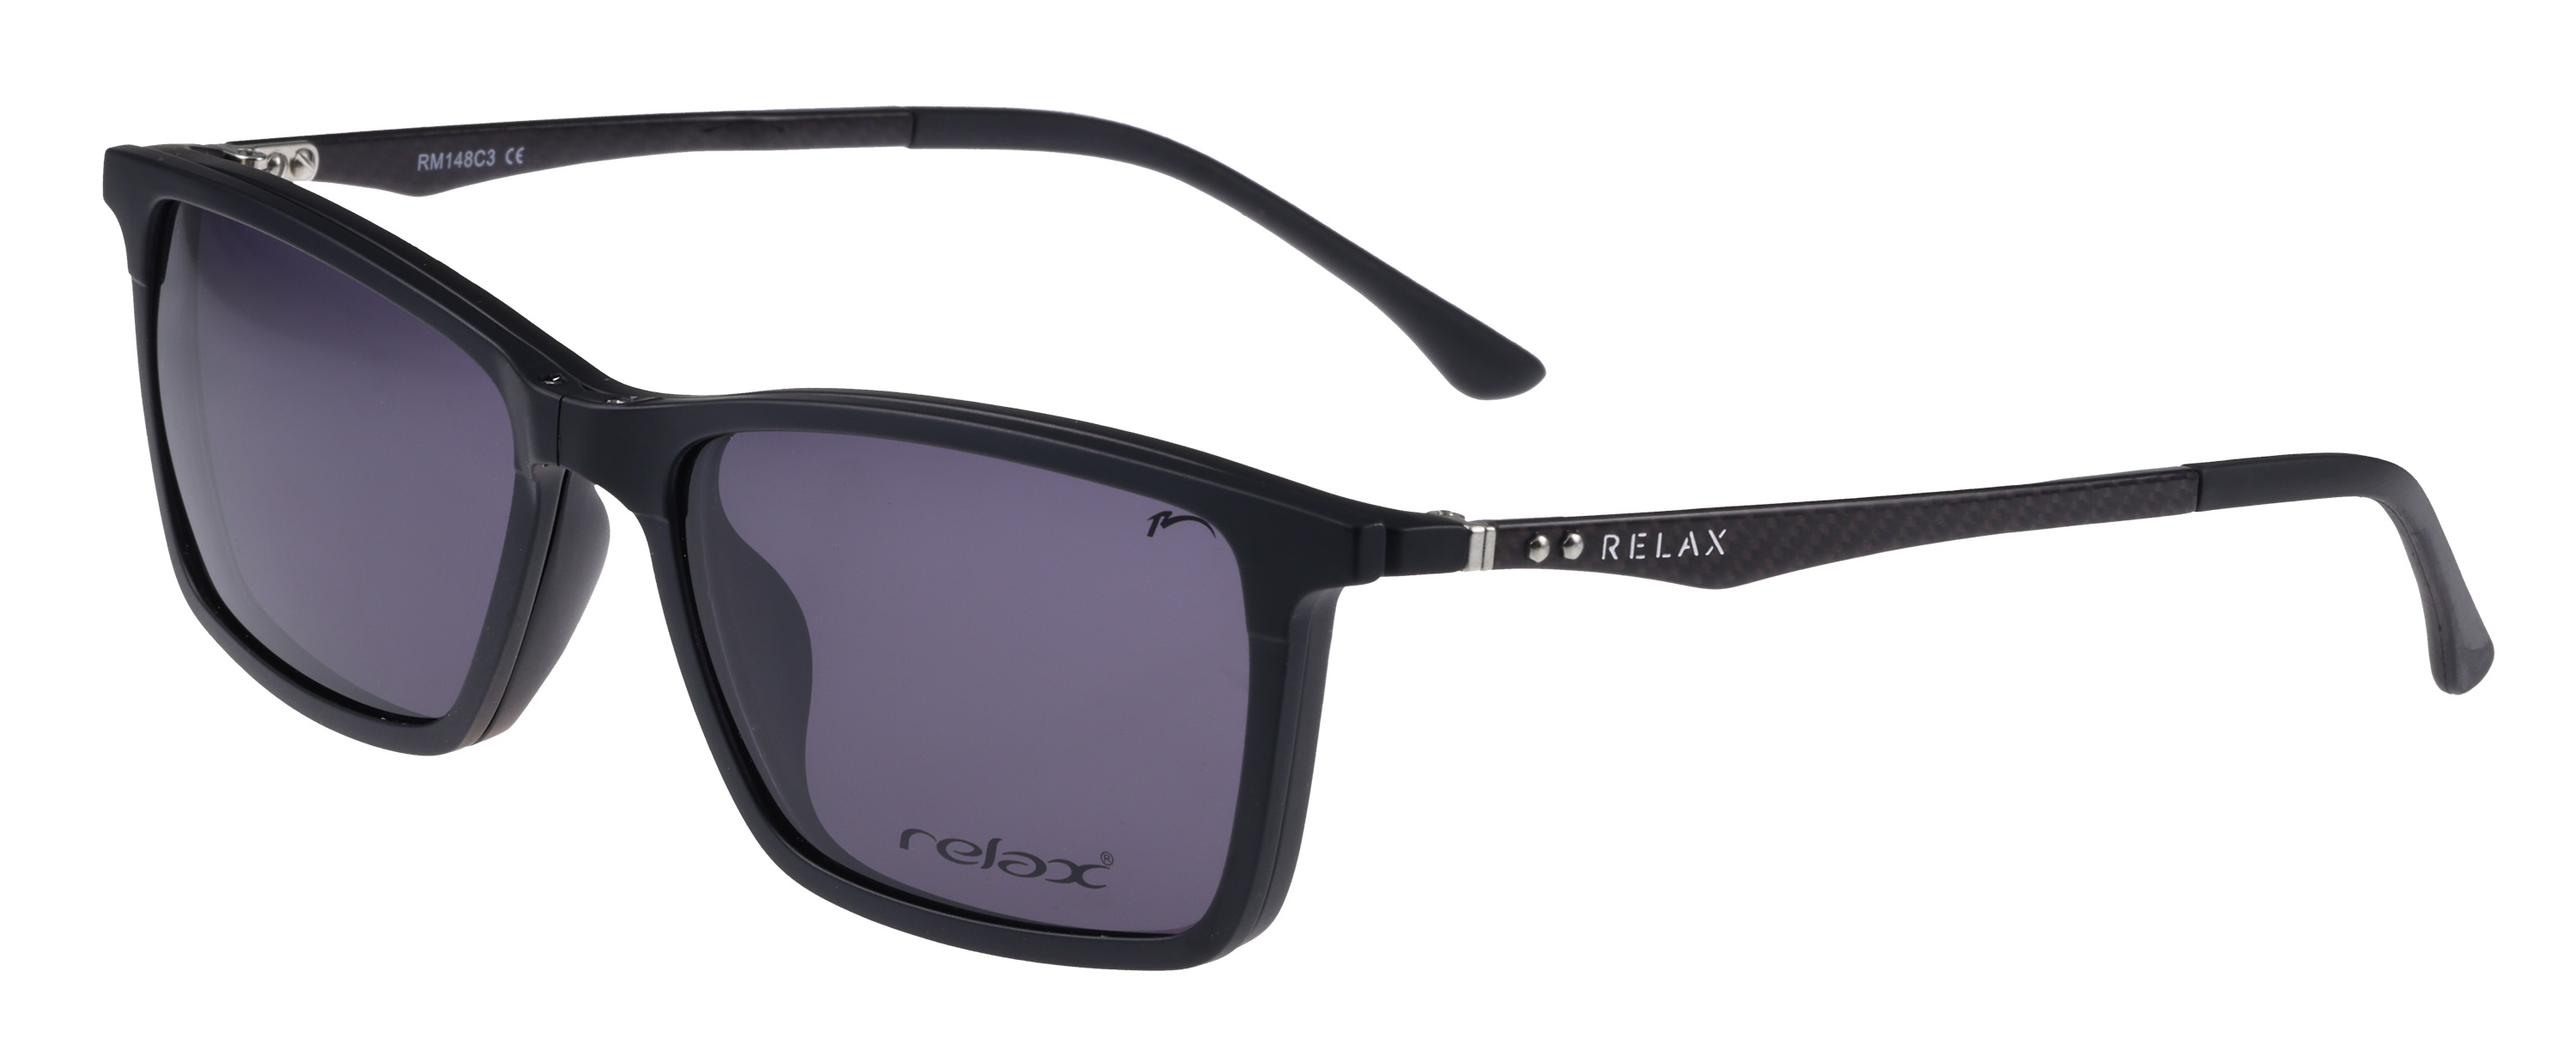 Náhradní dioptrický klip k brýlím Relax Orly RM148C3clip -